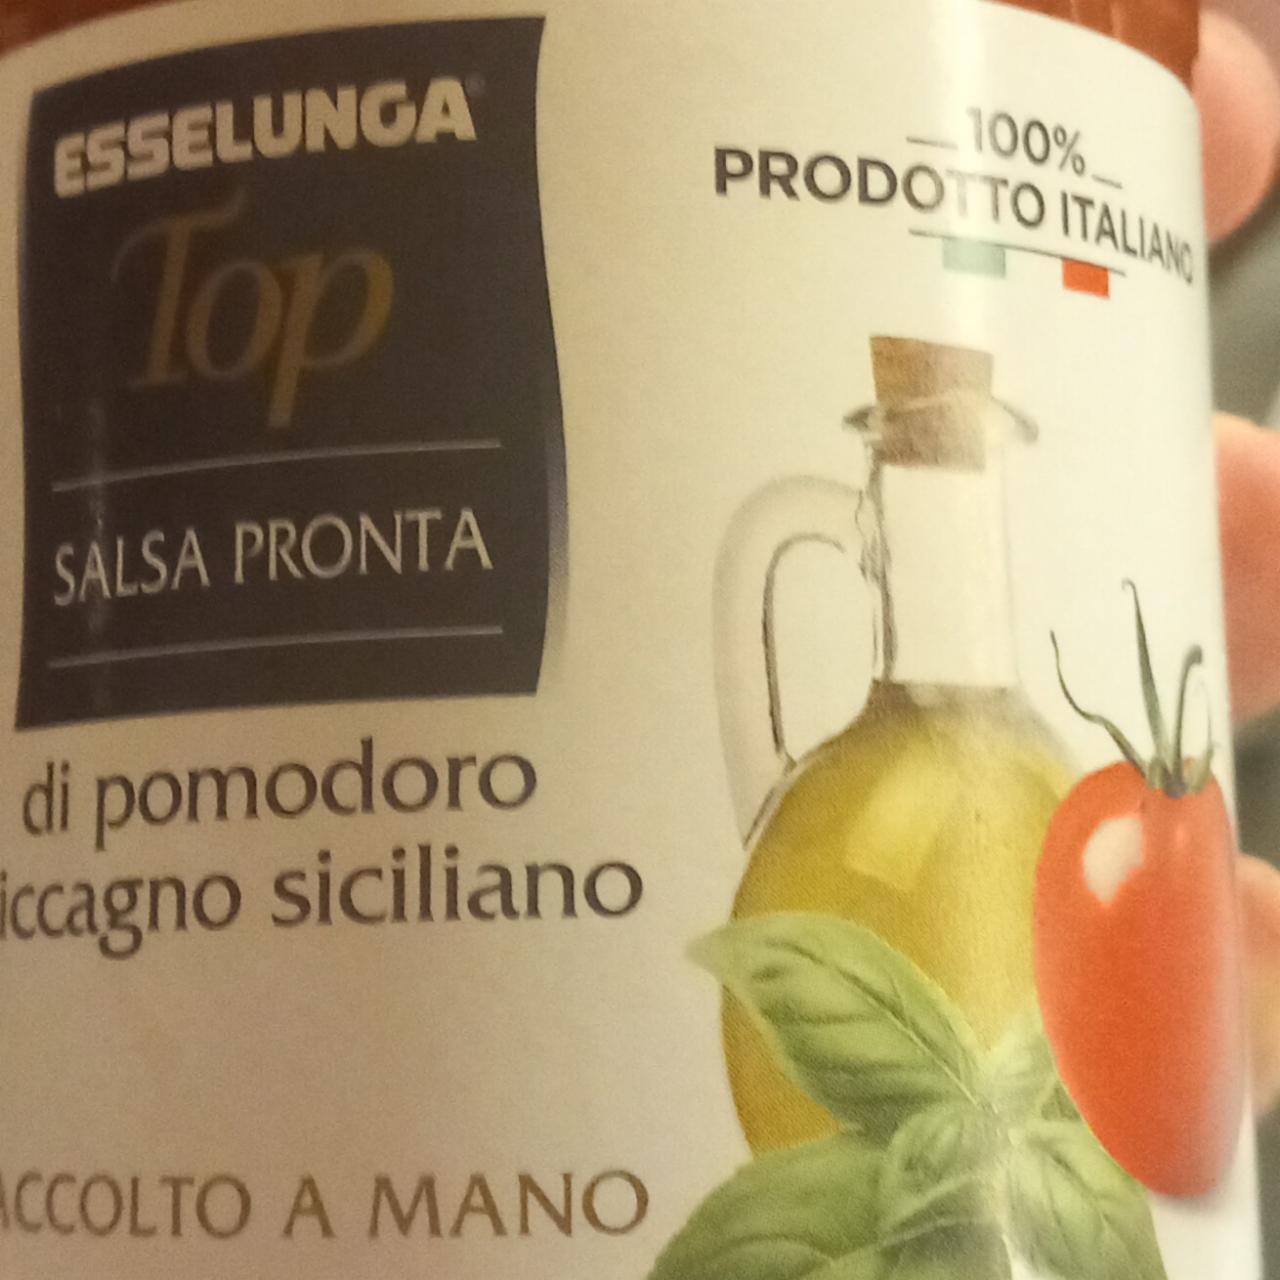 Fotografie - Top Salsa Pronta di pomodoro siccagno siciliano Esselunga